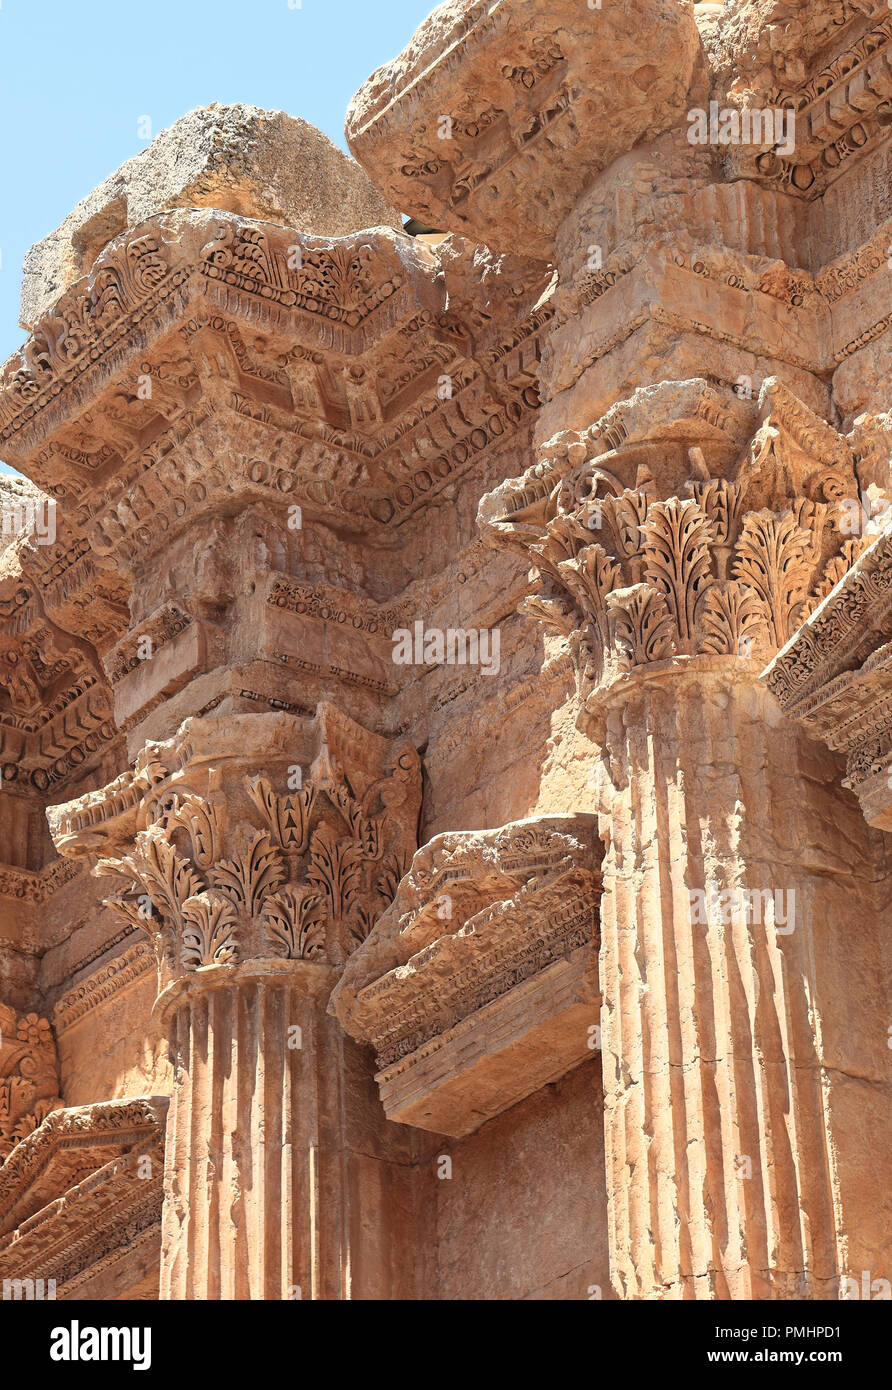 Ruines Romaines de Baalbek au Liban, détails à l'intérieur du temple de Bacchus Banque D'Images